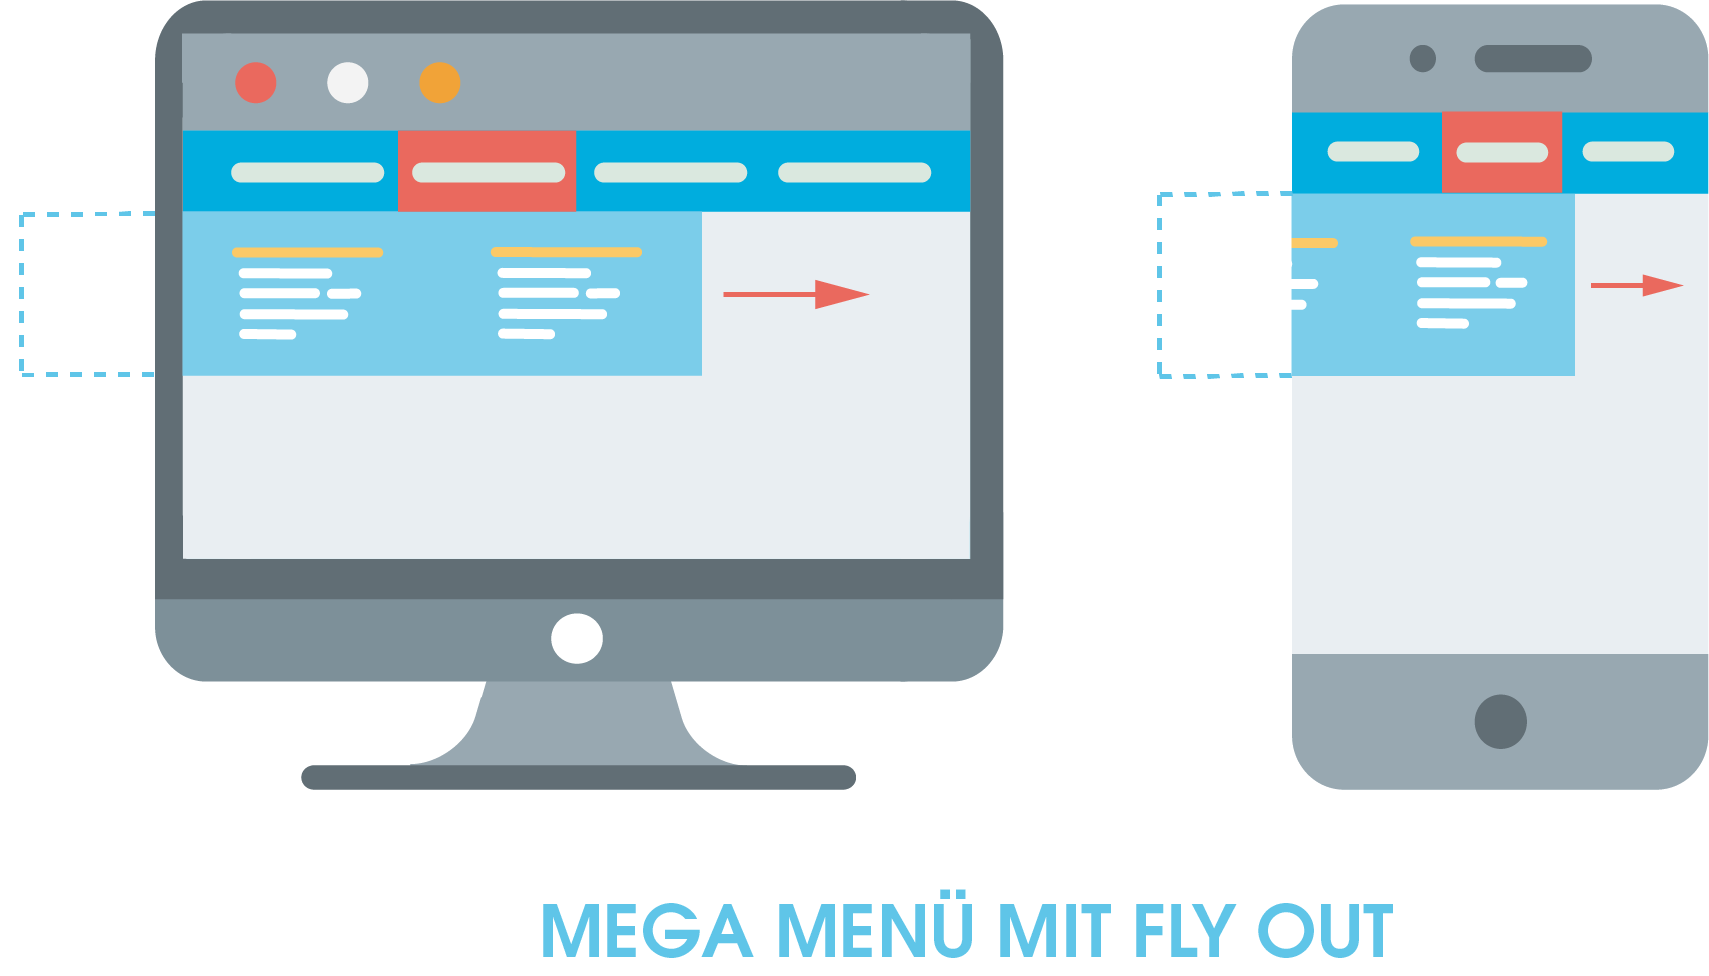 Darstellung eines Mega Menüs mit Fly Out.
Hier zu sehen ist ein Mega Menü als eine Möglichkeit eine horizontale Navigation einzusetzen. Die Fly Out-Funktion des Menüs zeigt sich darin, dass ein Teil der Navigation aus dem unsichtbaren Bereich des Bildschirmrandes einfliegt, wenn der Nutzer das Menü verwendet.